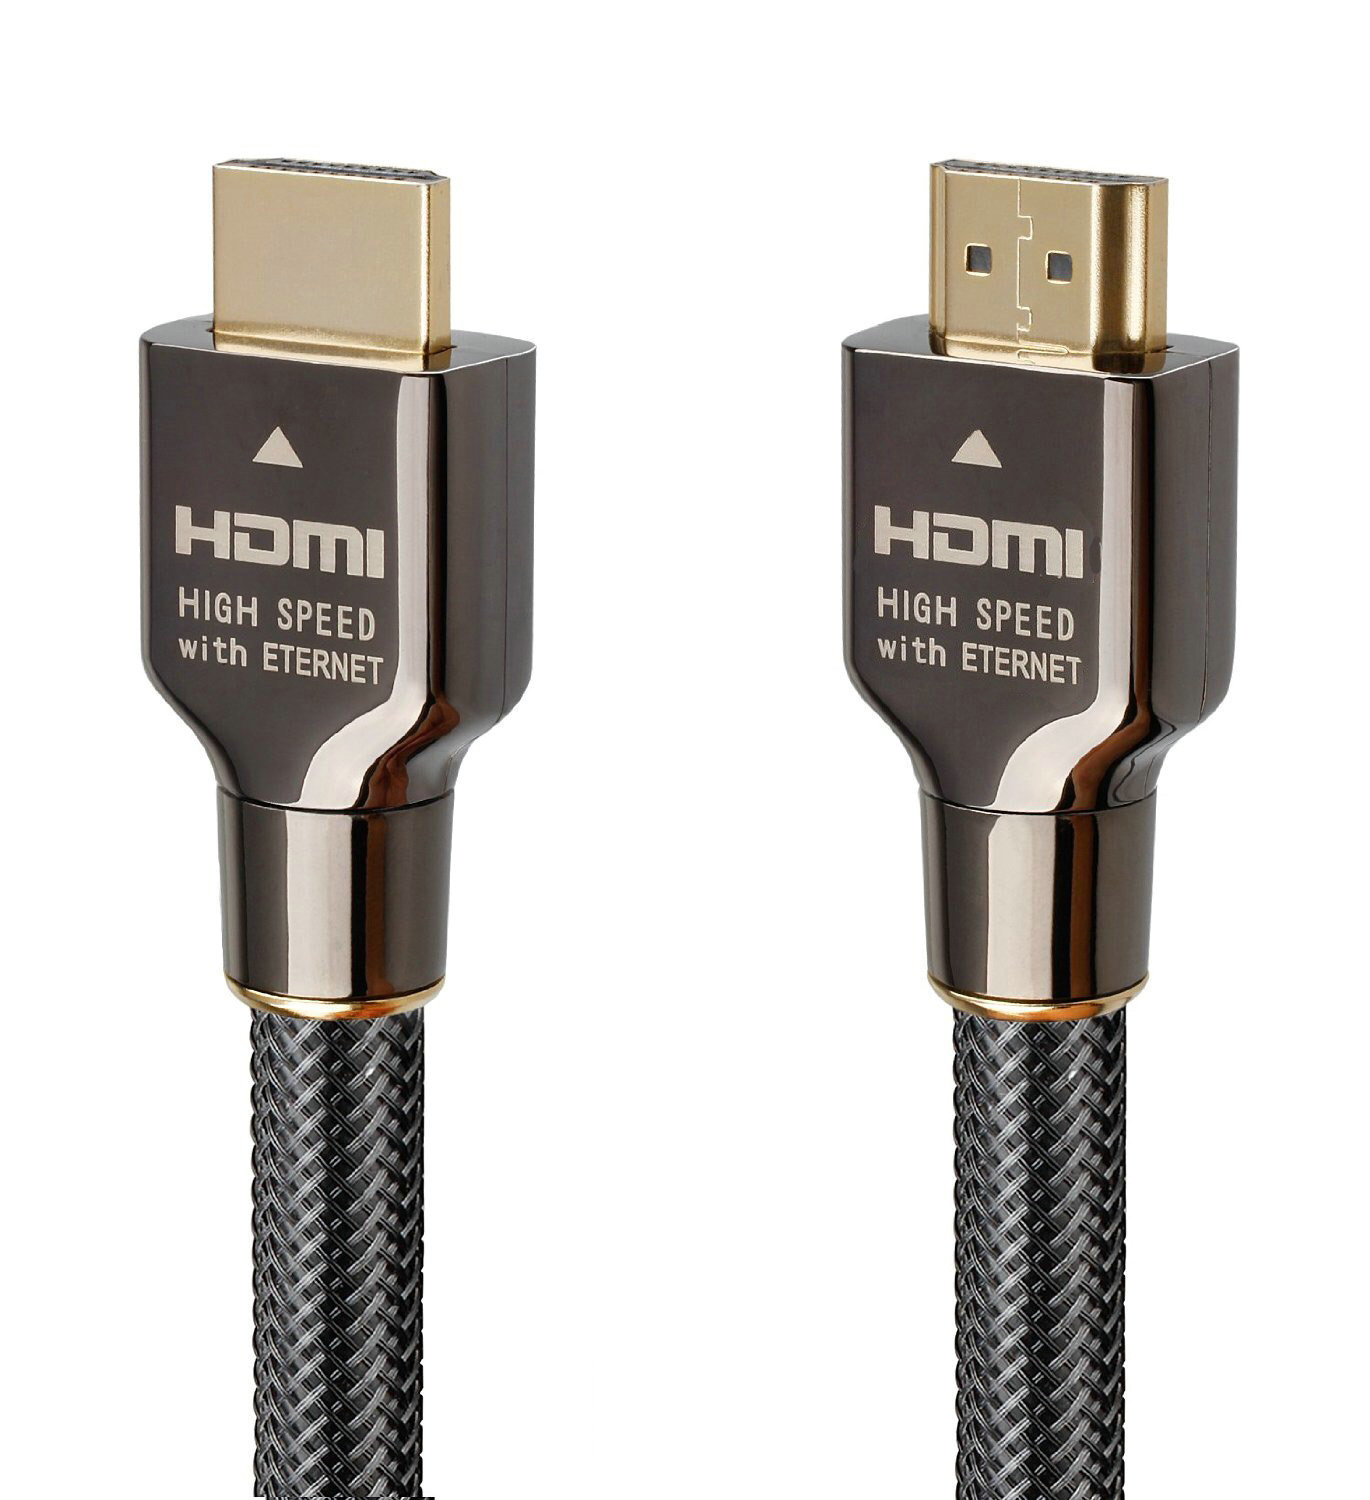 HDMI Cable - HDM006 Copper